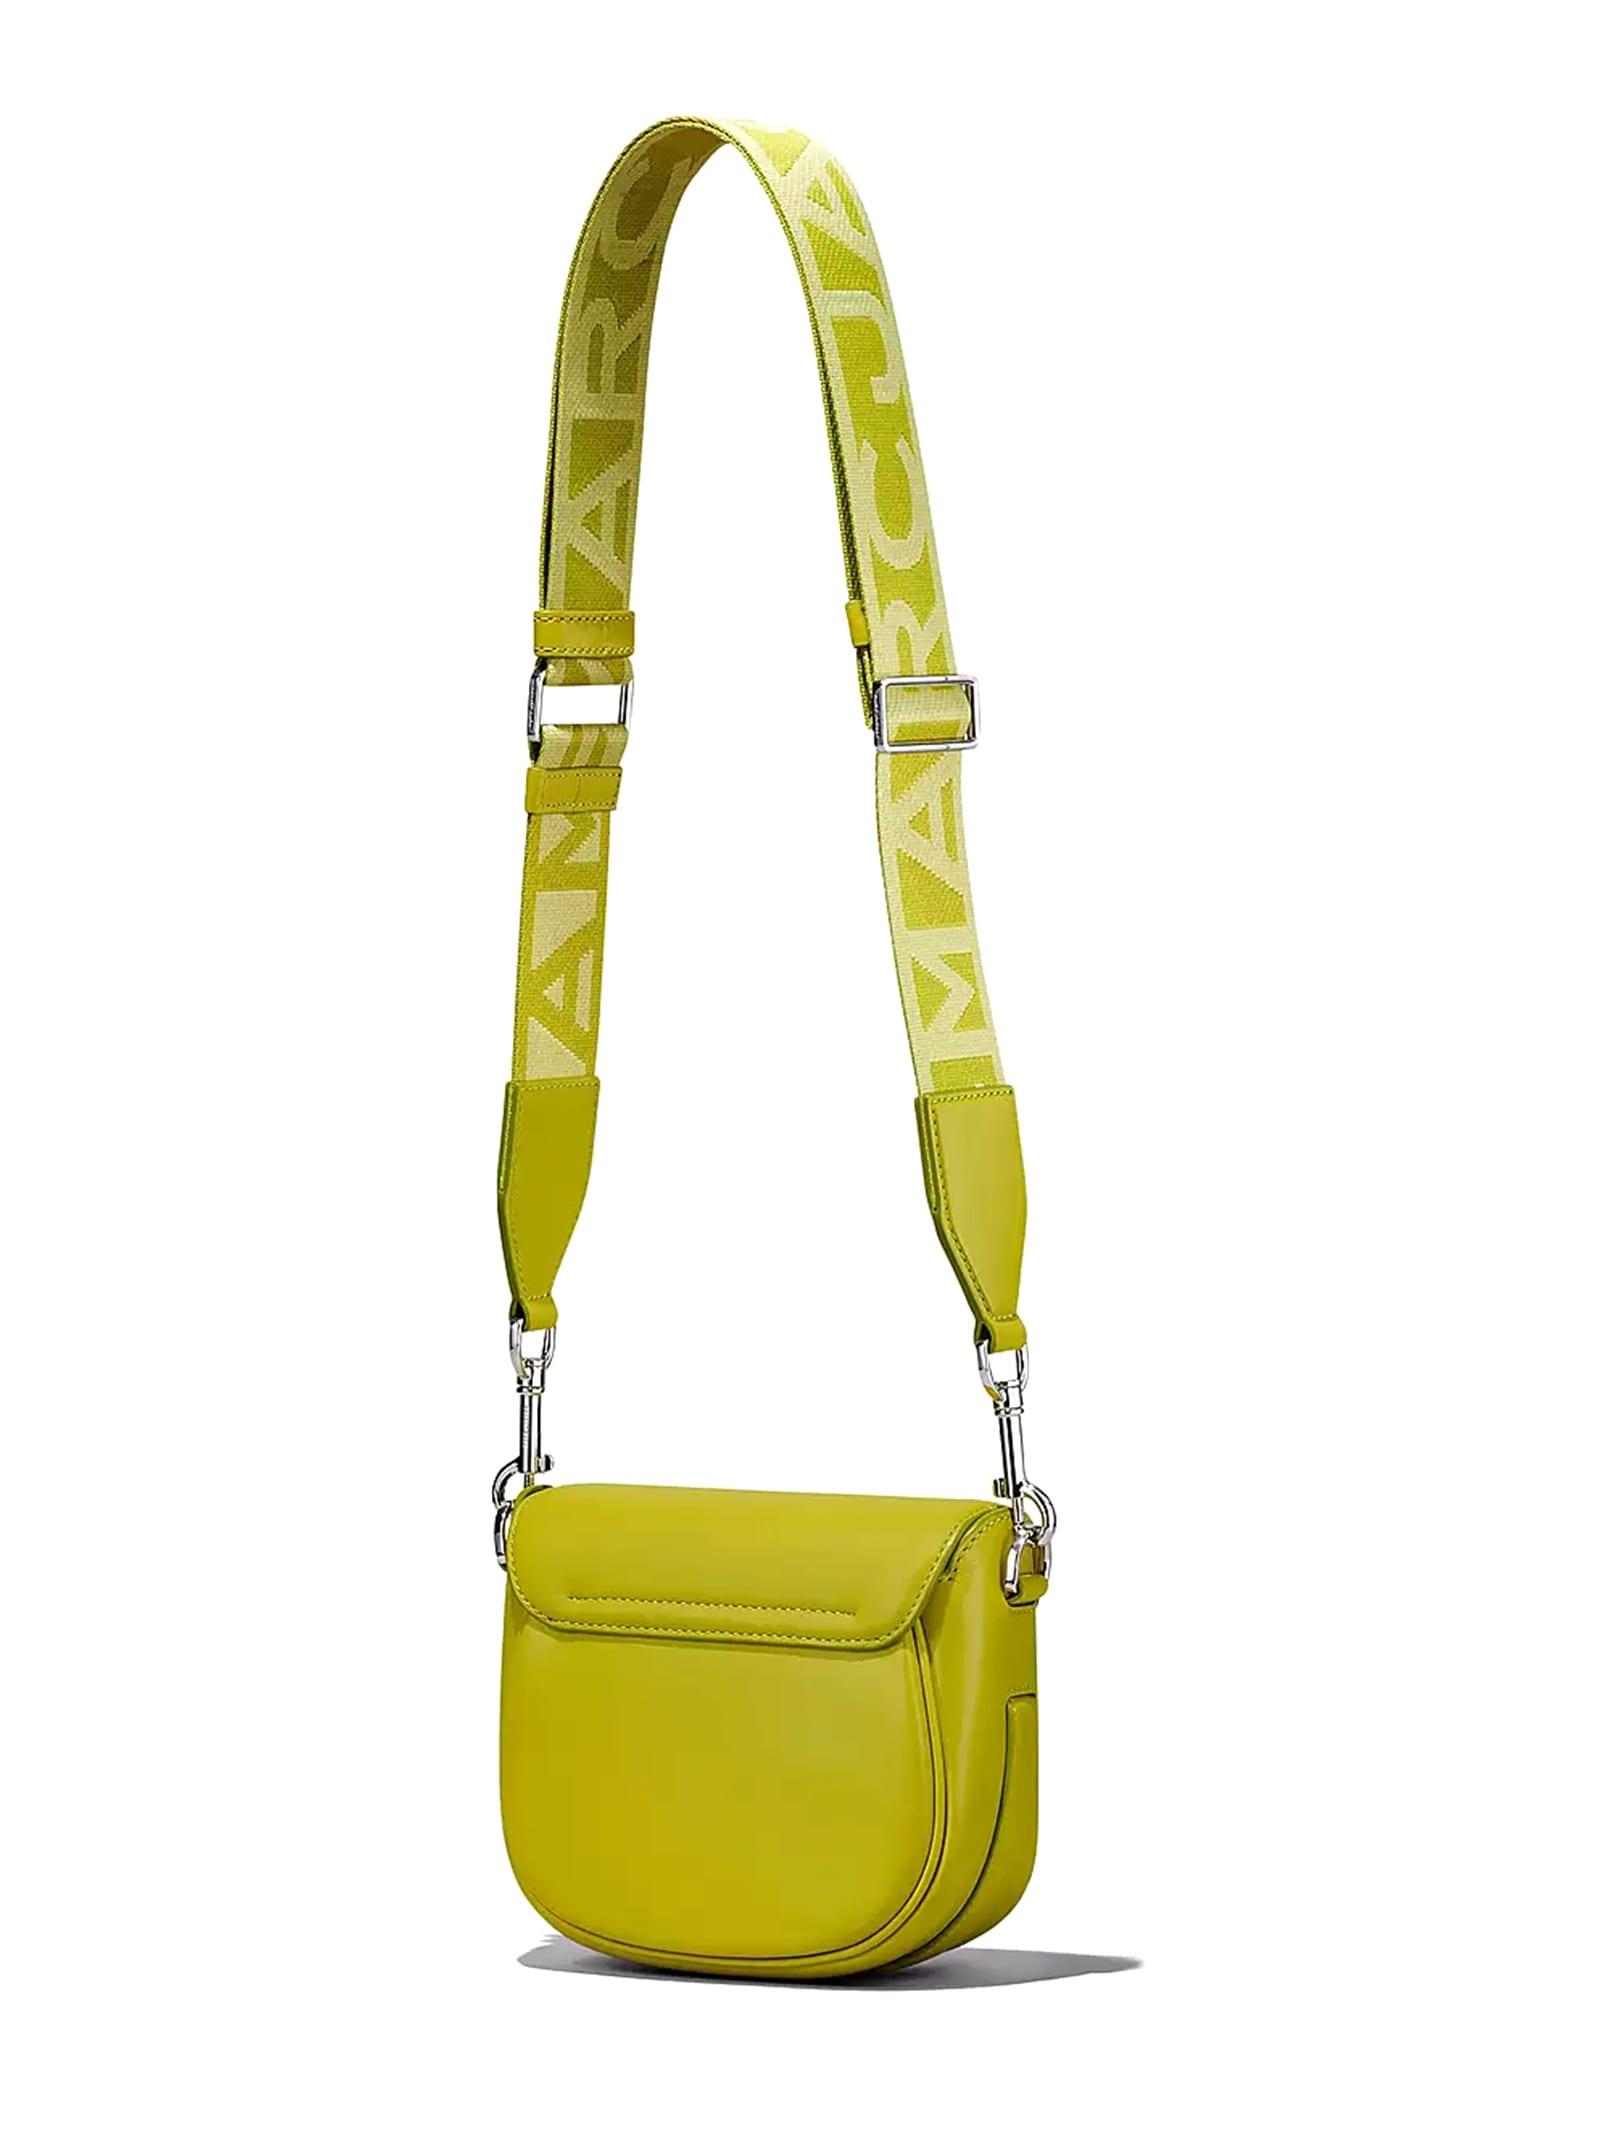 saddle bag yellow